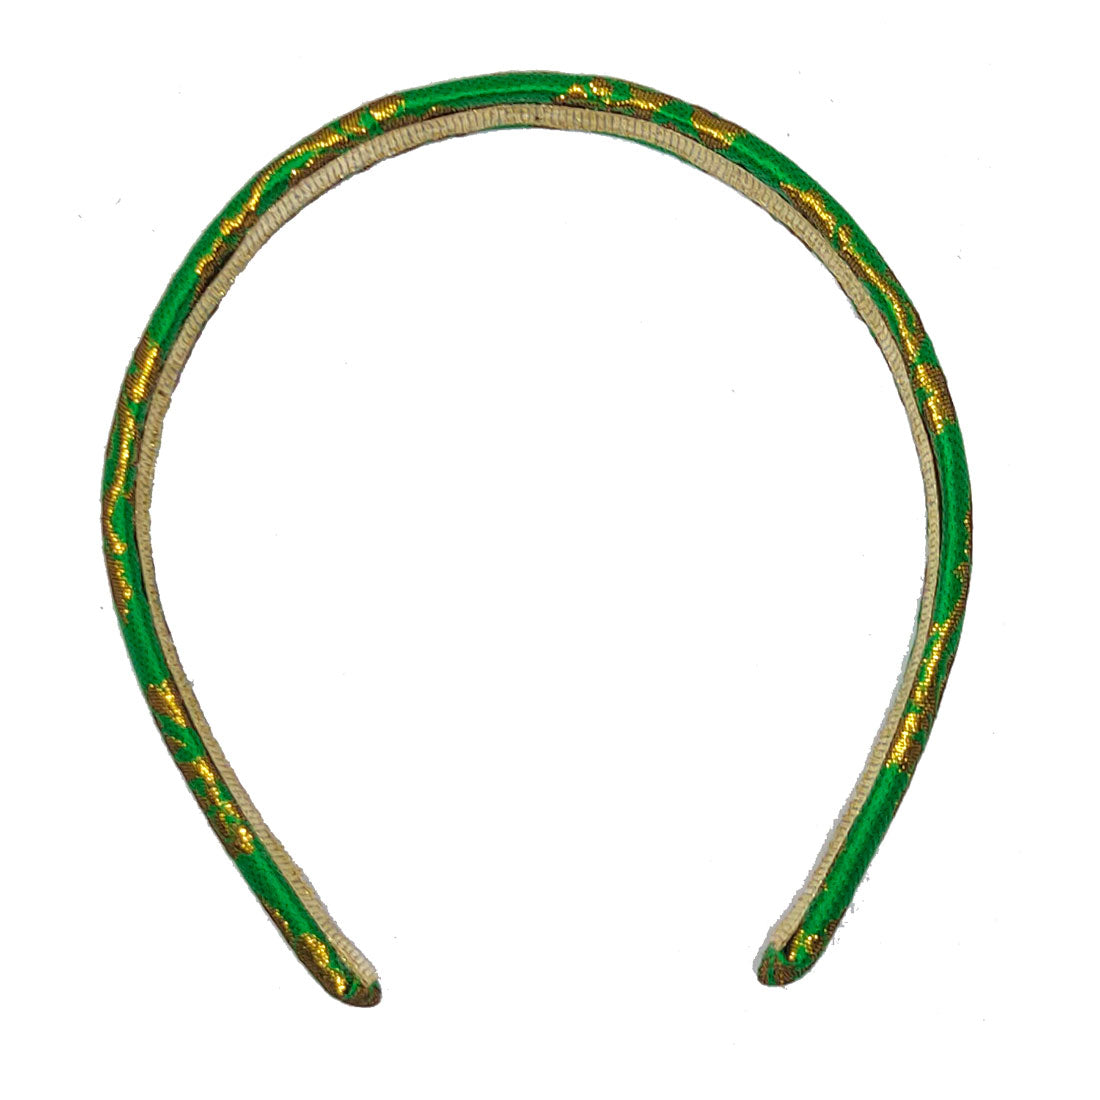 Anokhi Ada Handmade Fabric Hairband/Headband for Girls and Women (Light Green)-04-26H